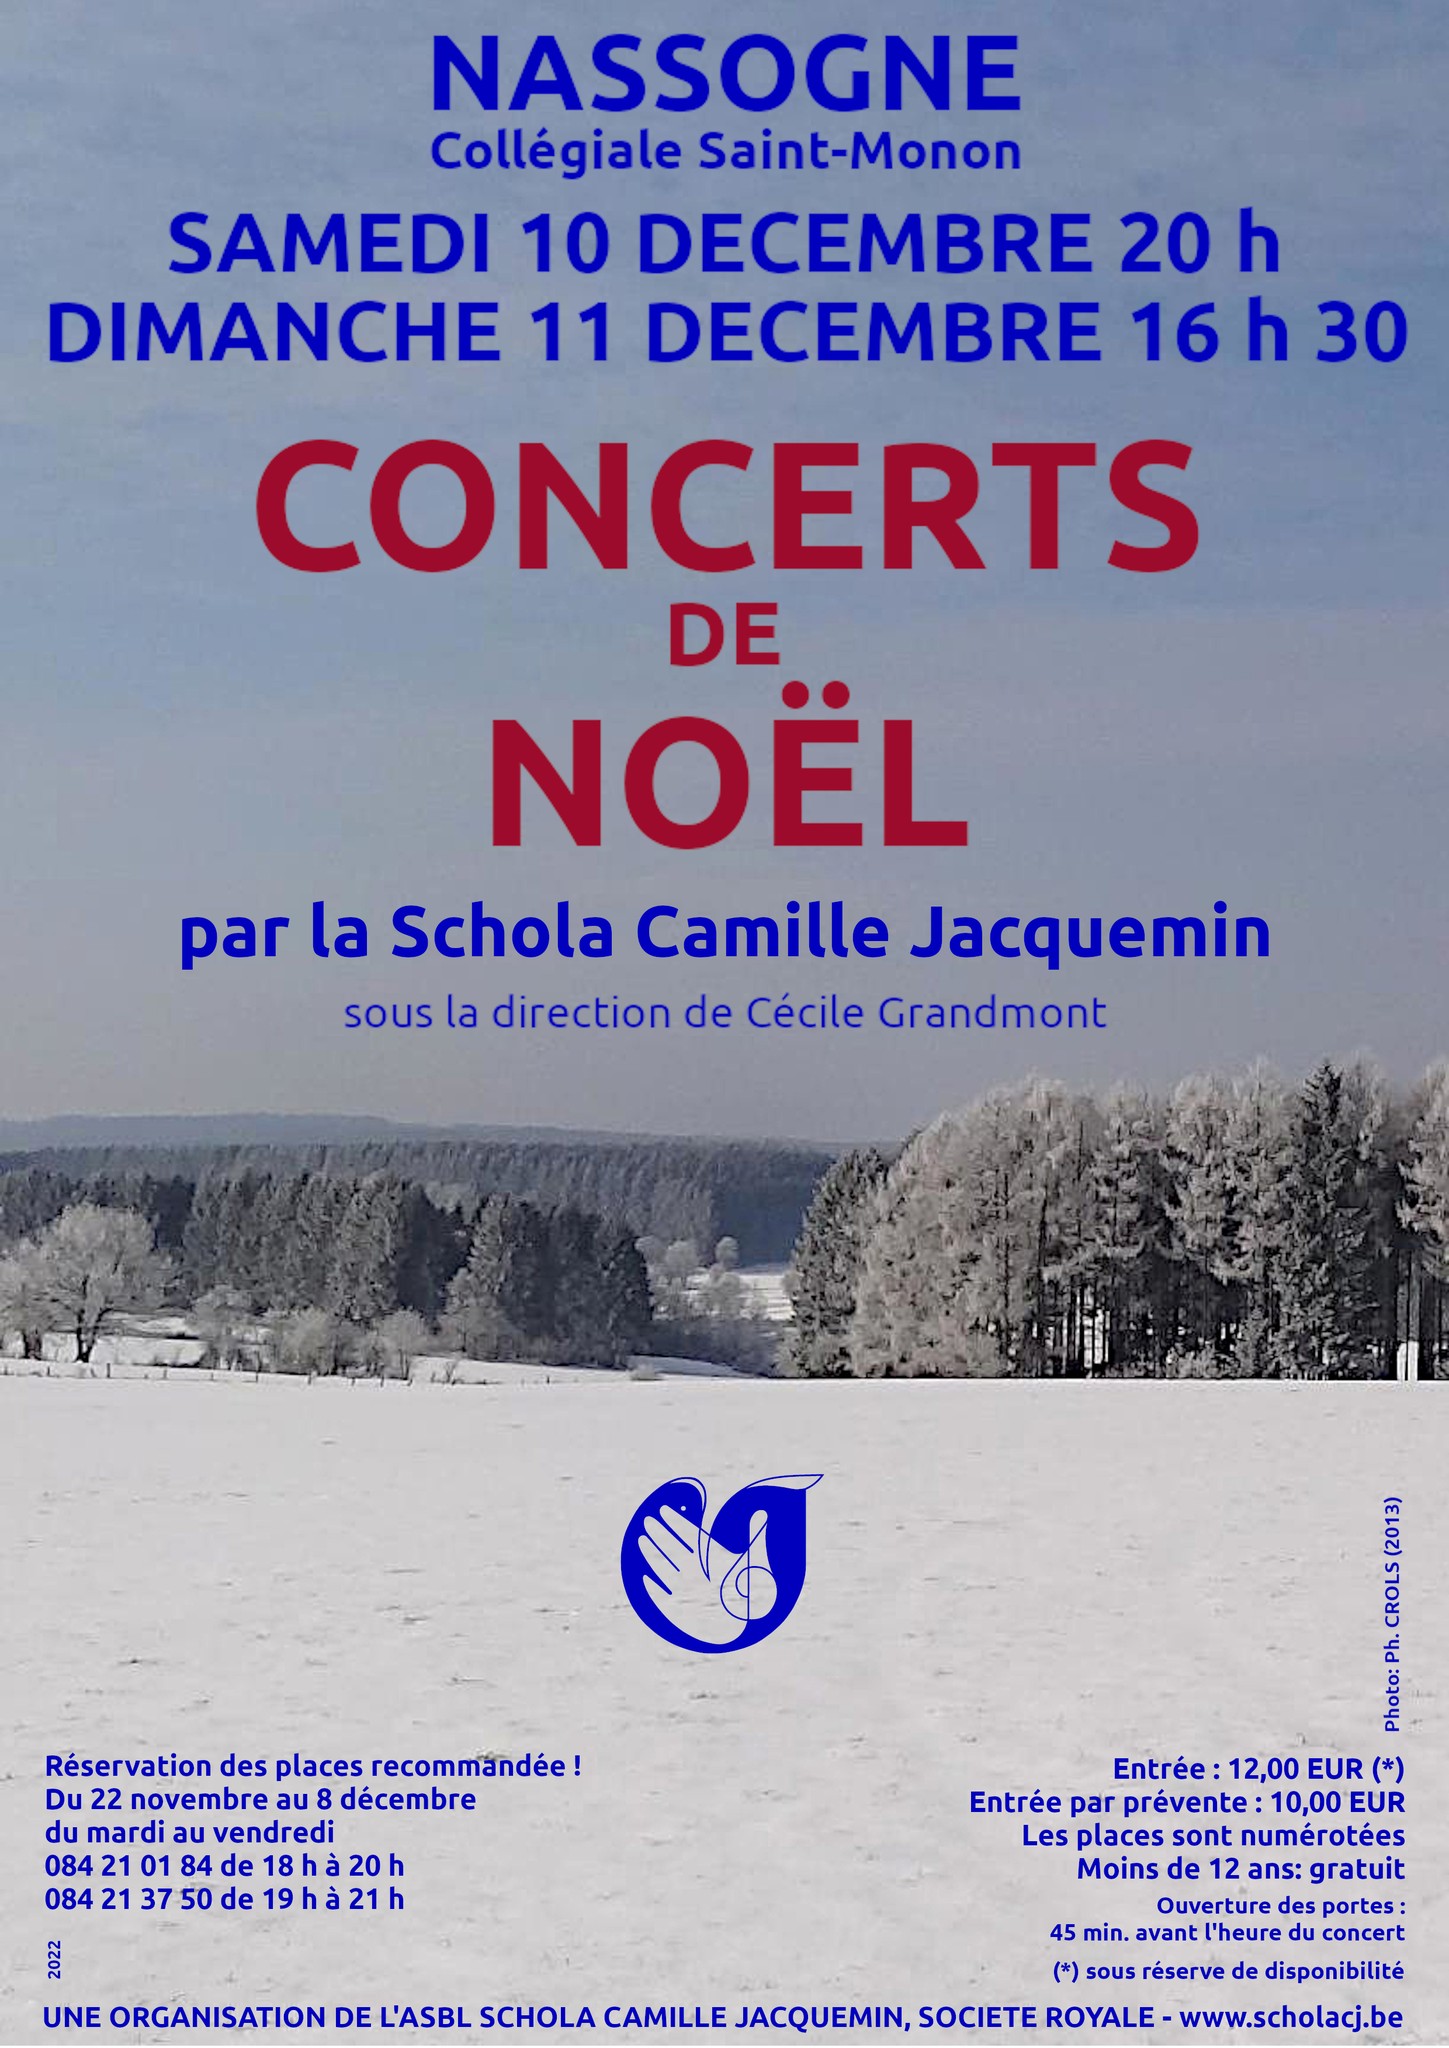 Double concert de Noël de la Schola Camille Jacquemin, 
					les 10 et 11 décembre 2022 à Nassogne